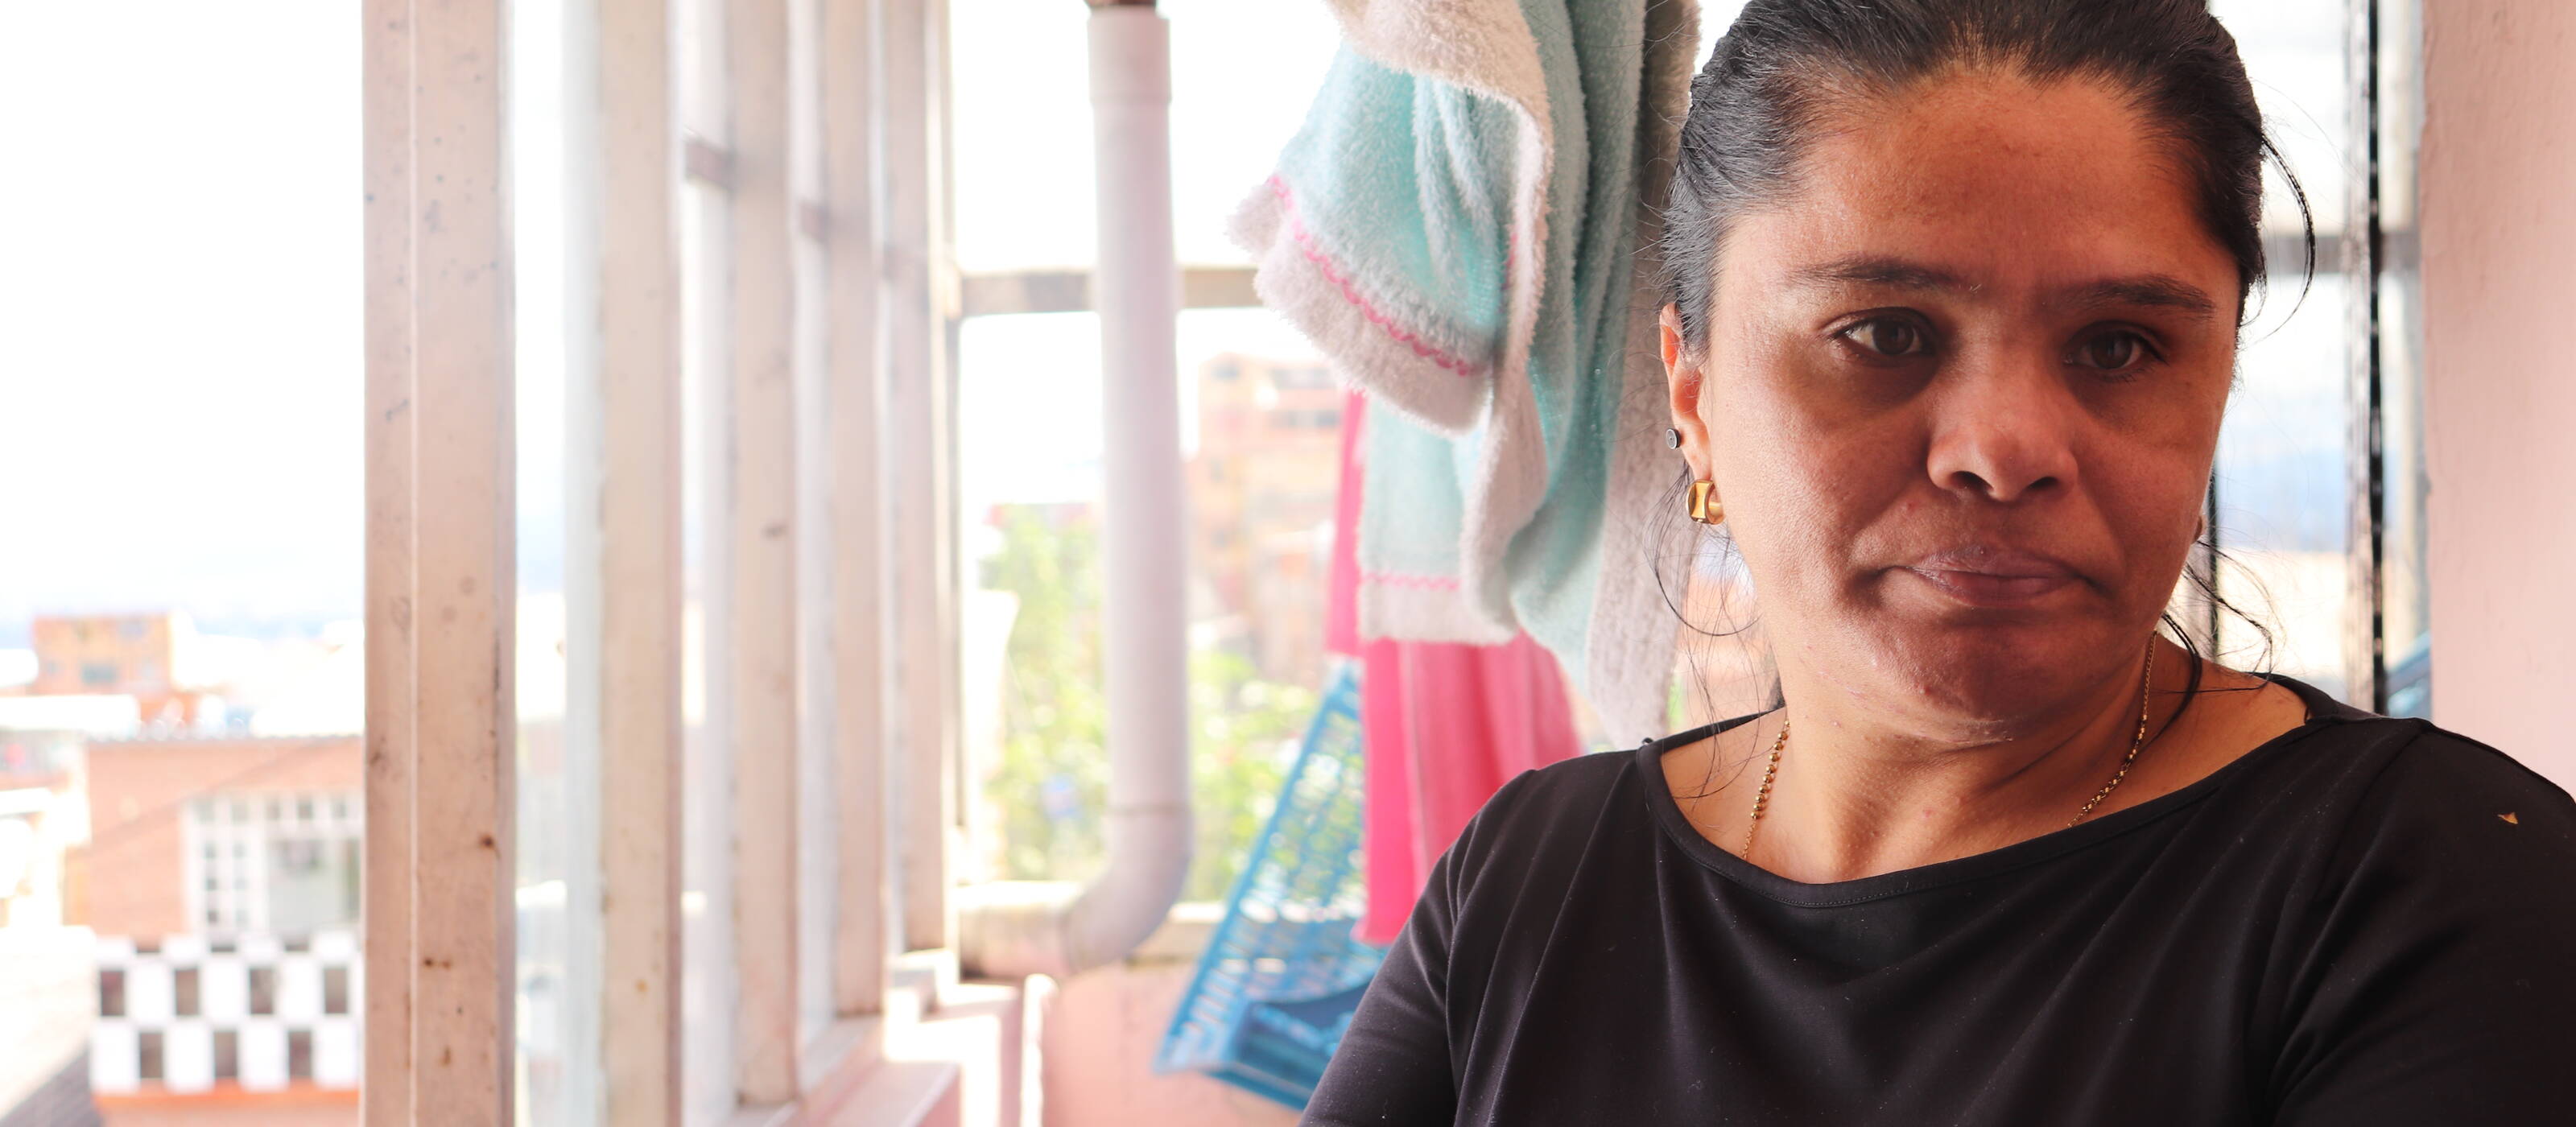 Auch Mercedes Hernandez sah keine Zukunft in Venezuela. Die alleinerziehende Mutter liess die beiden Kinder in der Obhut einer Nachbarin, bis sie einen Job und eine Wohnung in Kolumbien fand.